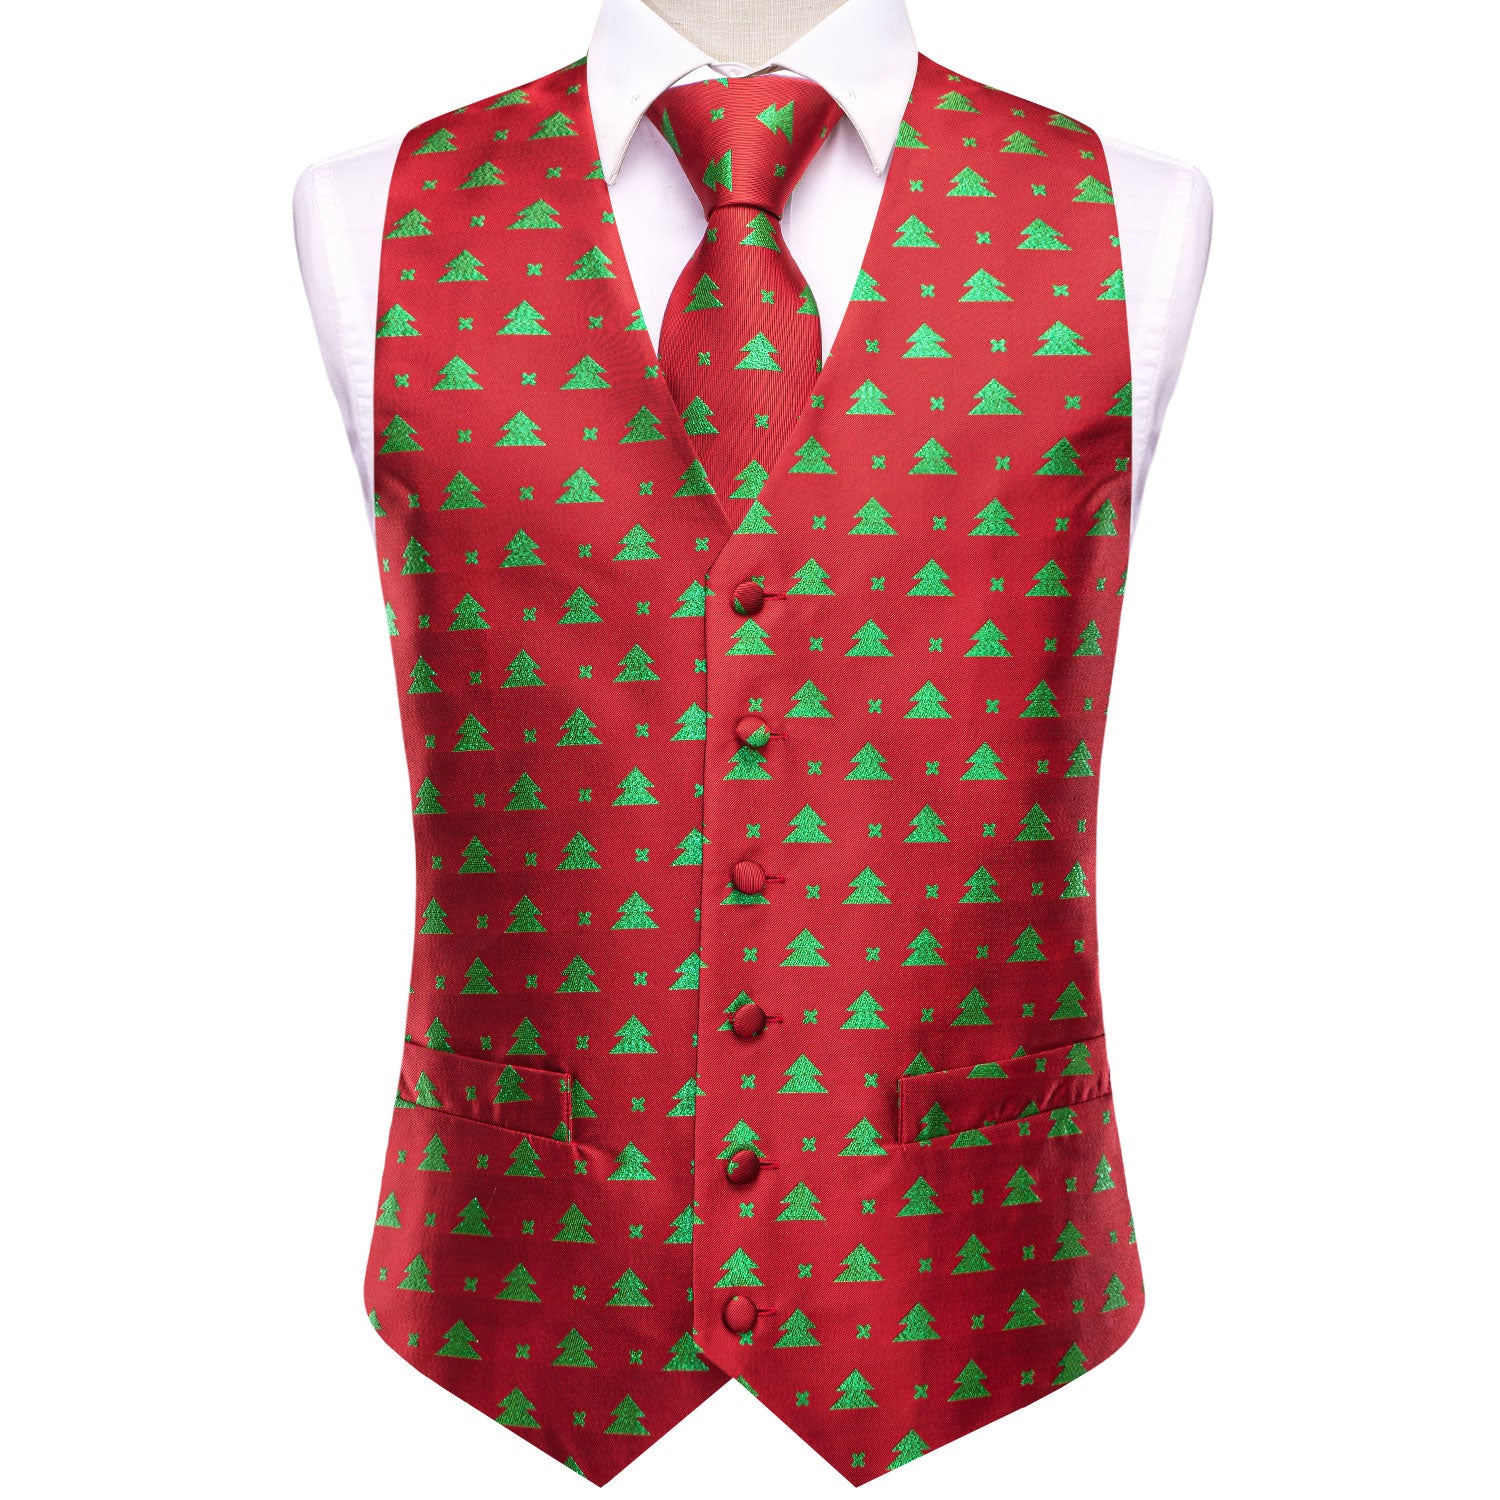 Red Green Christmas Tree Men's Vest Hanky Cufflinks Tie Set